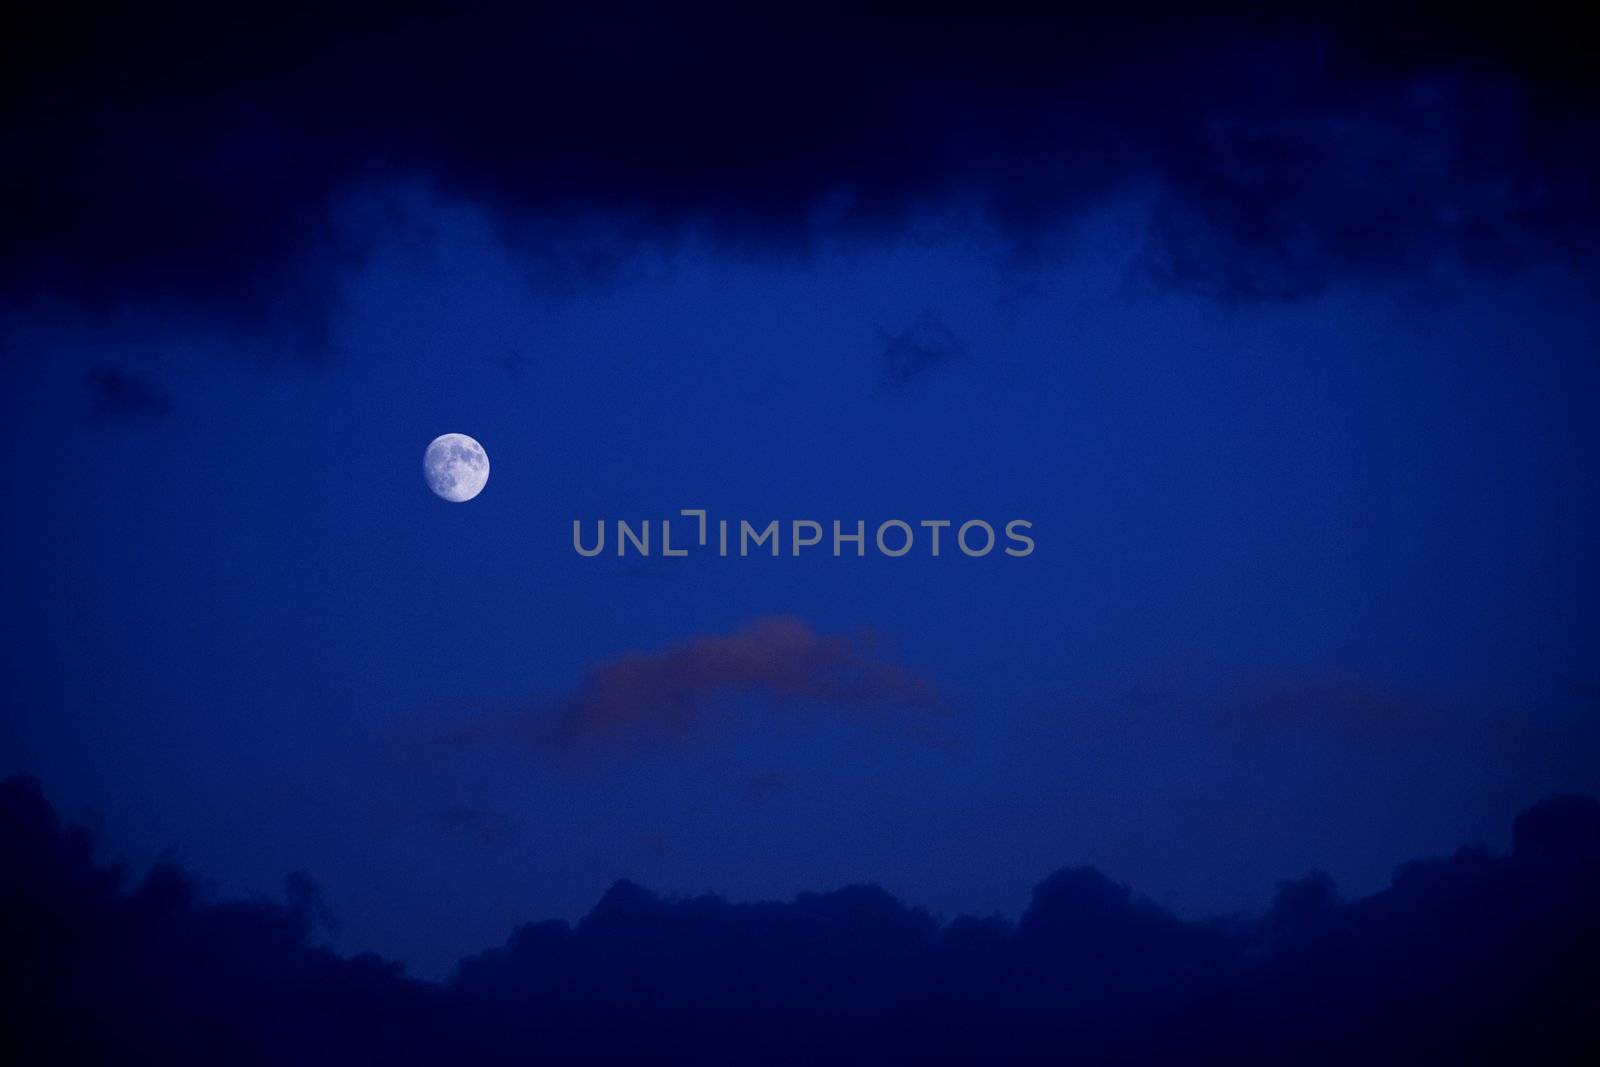 Moon on a dark blue sky